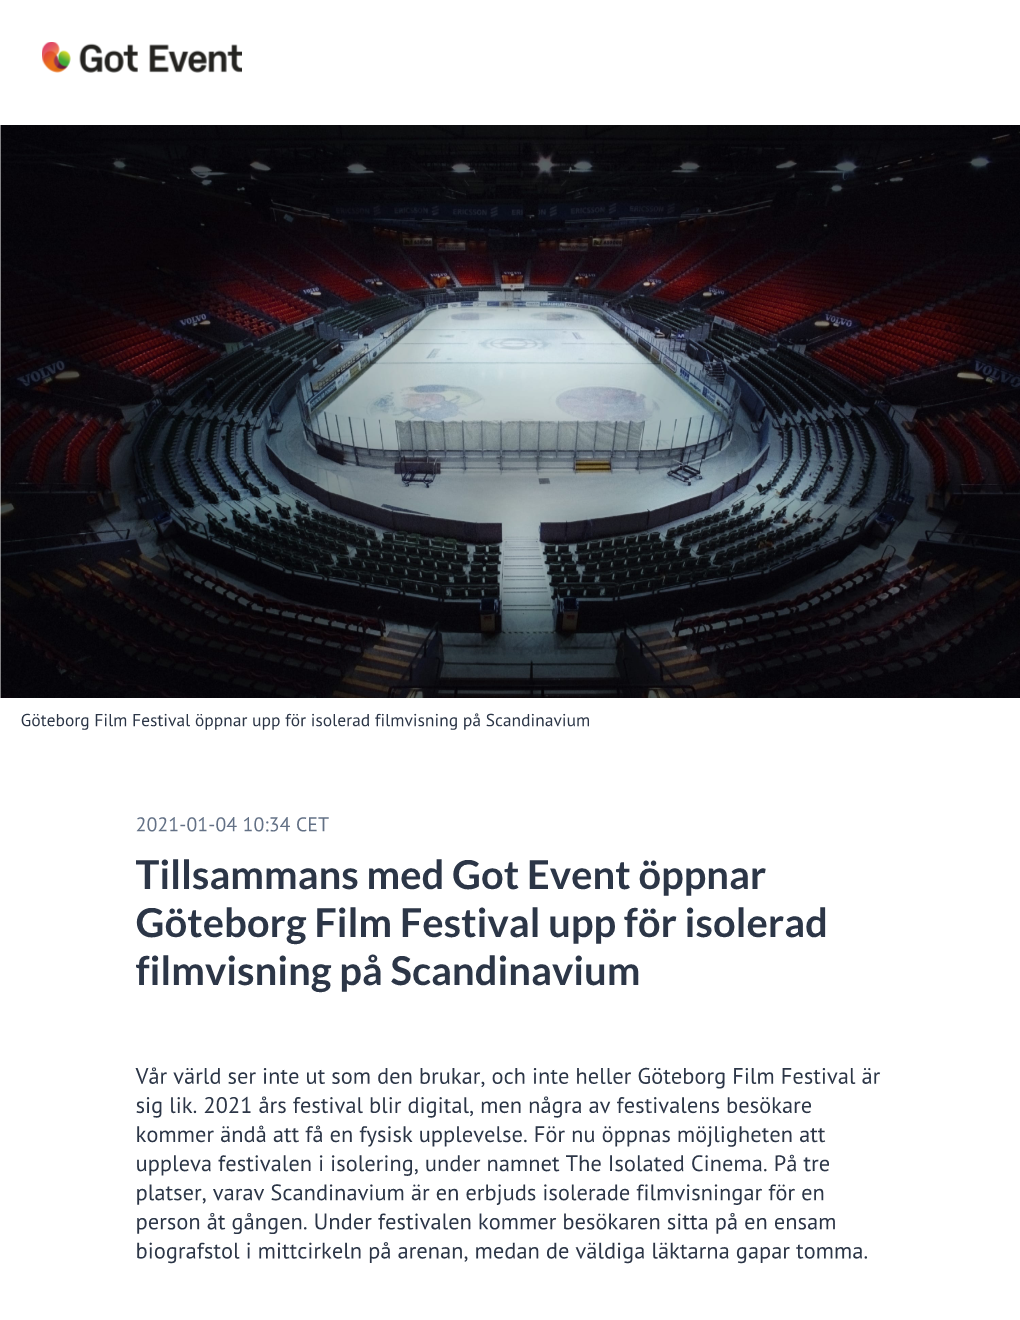 Tillsammans Med Got Event Öppnar Göteborg Film Festival Upp För Isolerad Filmvisning På Scandinavium